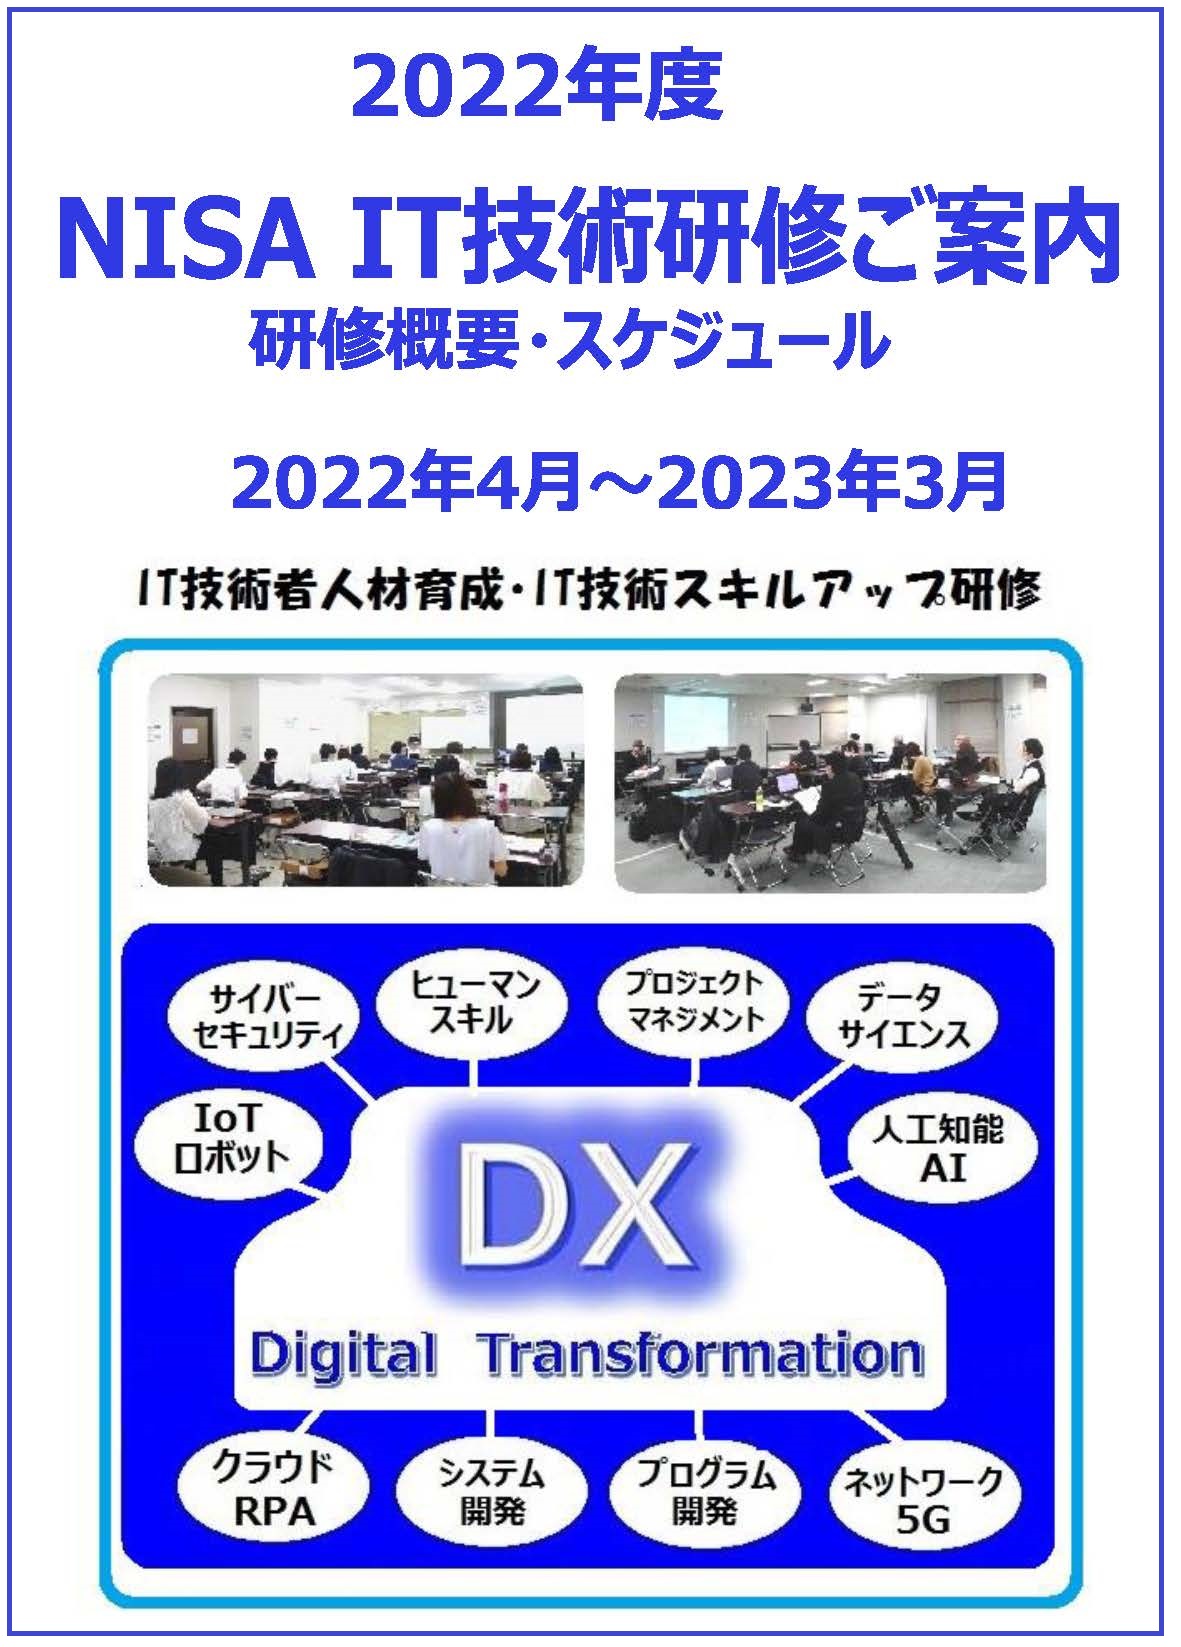 ■2022年度_NISA_IT研修_冊子表紙用イラスト.jpg